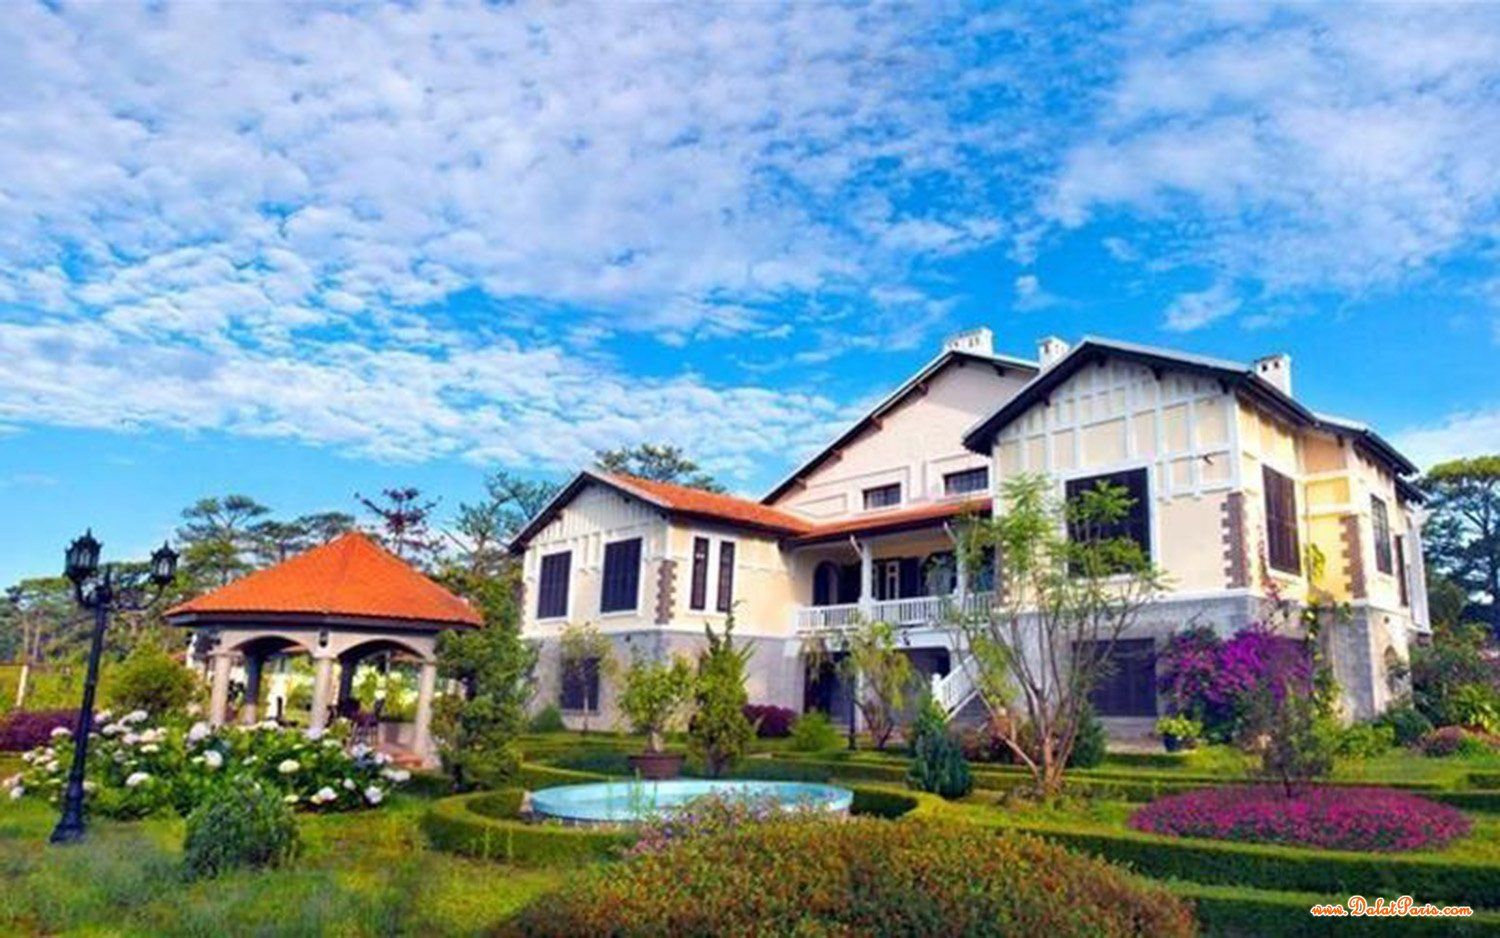 khách sạn Phố Đường Trần Phú, ngay trung tâm TP, gần Hồ Xuân Hương, siêu thị công viên, thích hợp kinh doanh khách sạn, văn phòng công ty, giá tốt 20 tỷ.